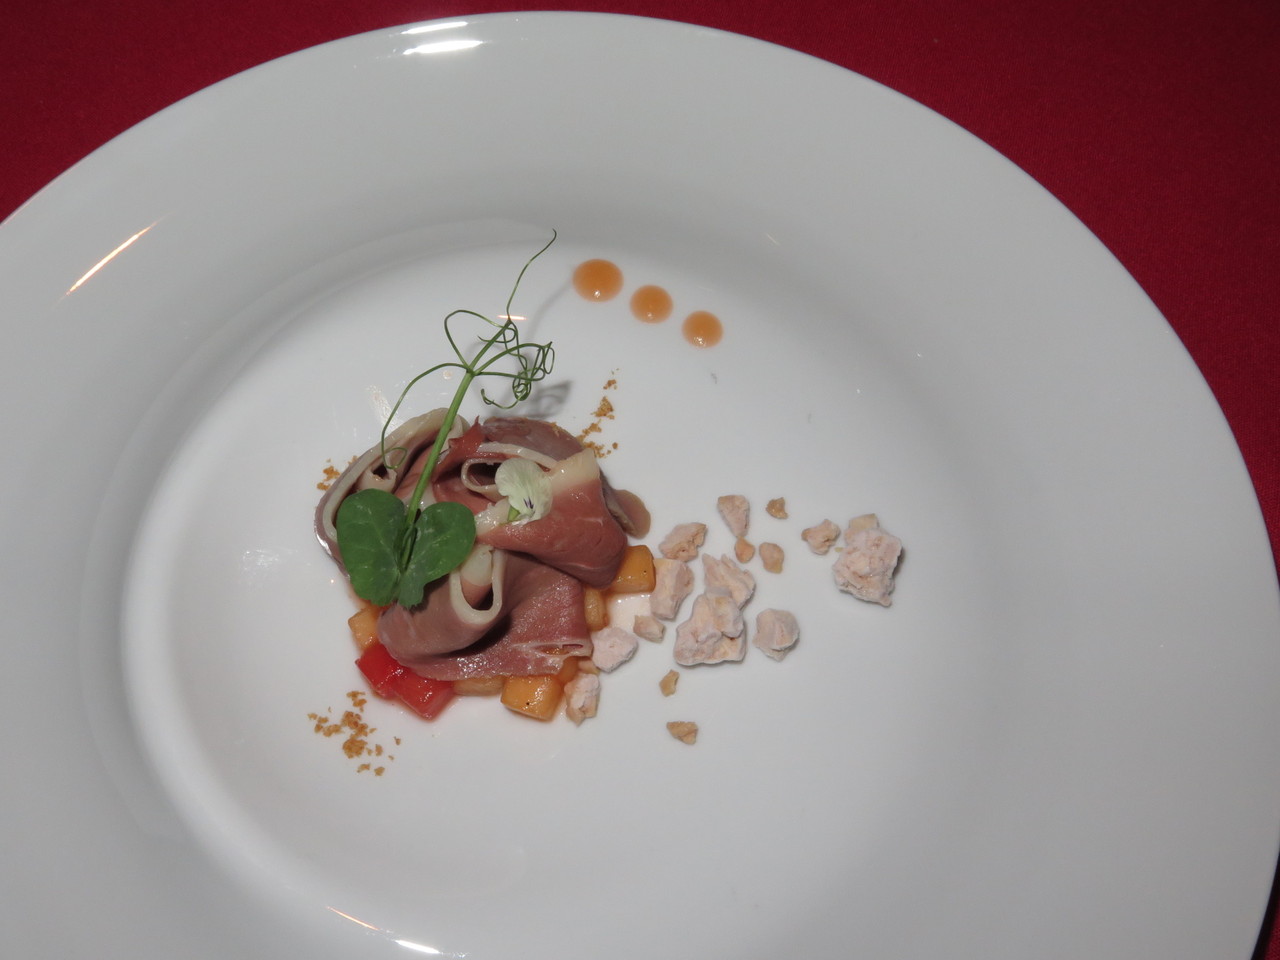 ‘Prosciutto’ de pato, melão, geleia de ‘Prosciutto di Parma’ e foie gras